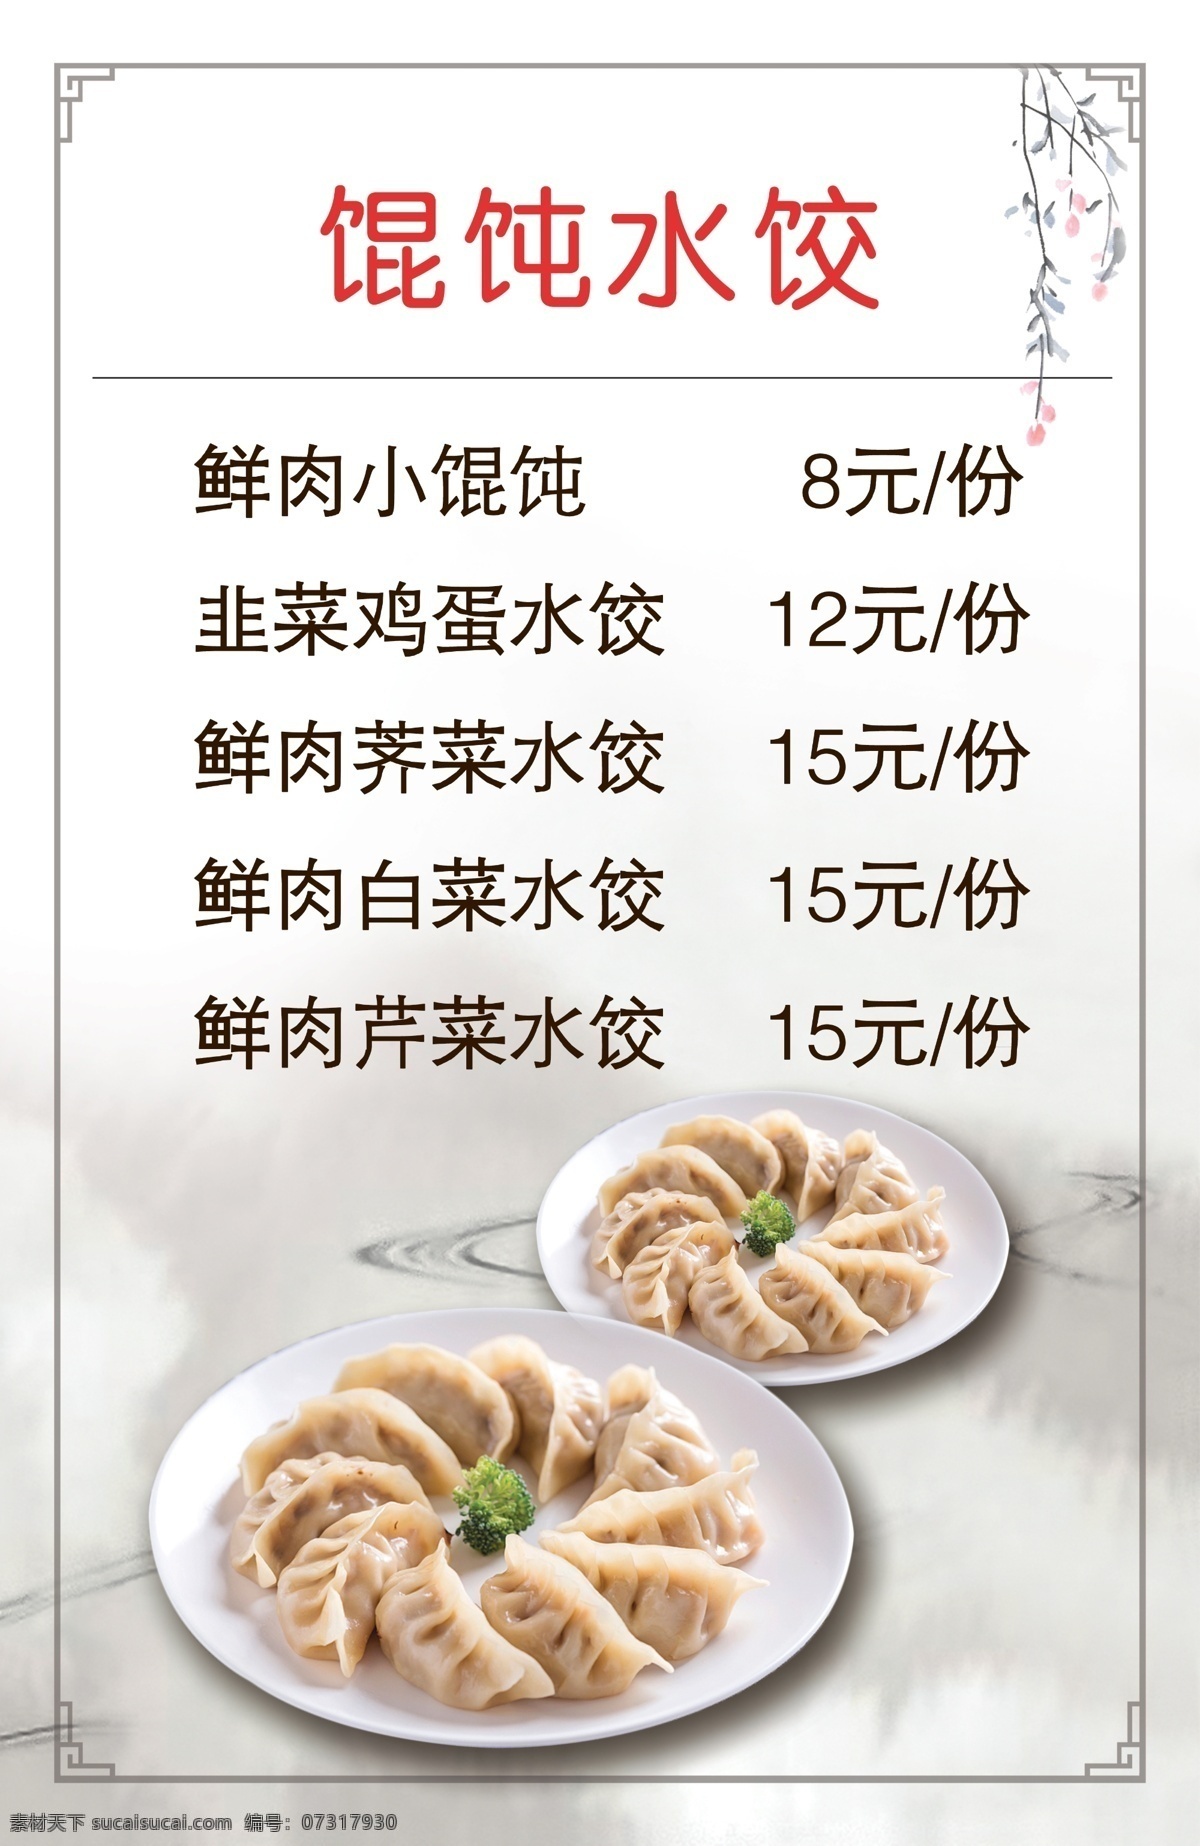 水饺菜谱 菜单 菜谱 面馆 中式 饺子 菜单菜谱